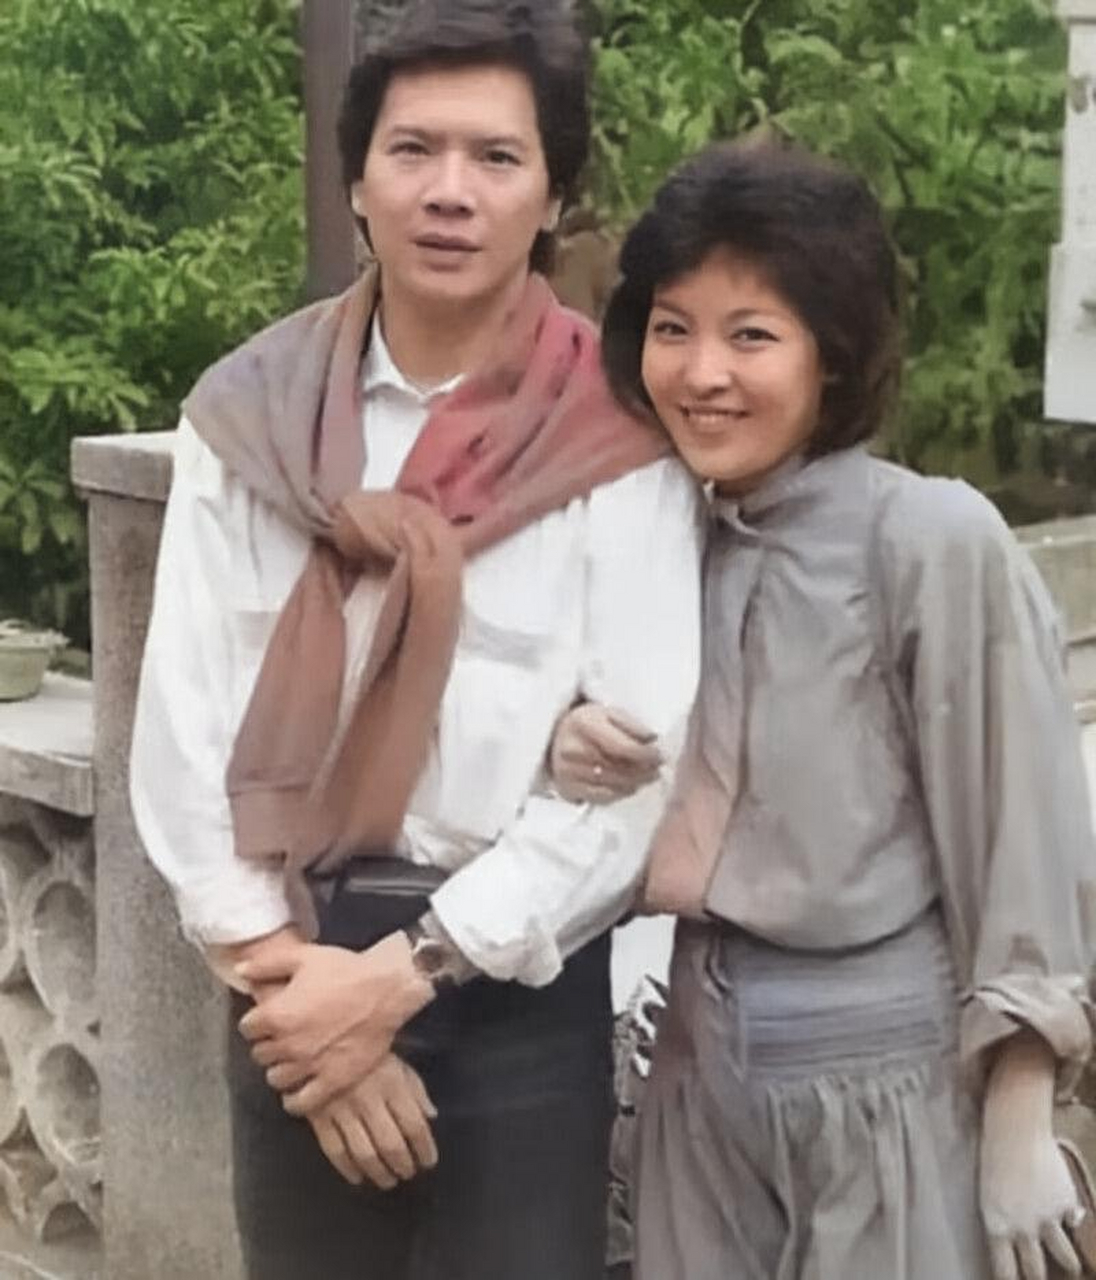 上世纪80年代,一张向华强和陈岚的老照片,这是他们的蜜月照,隔着屏幕